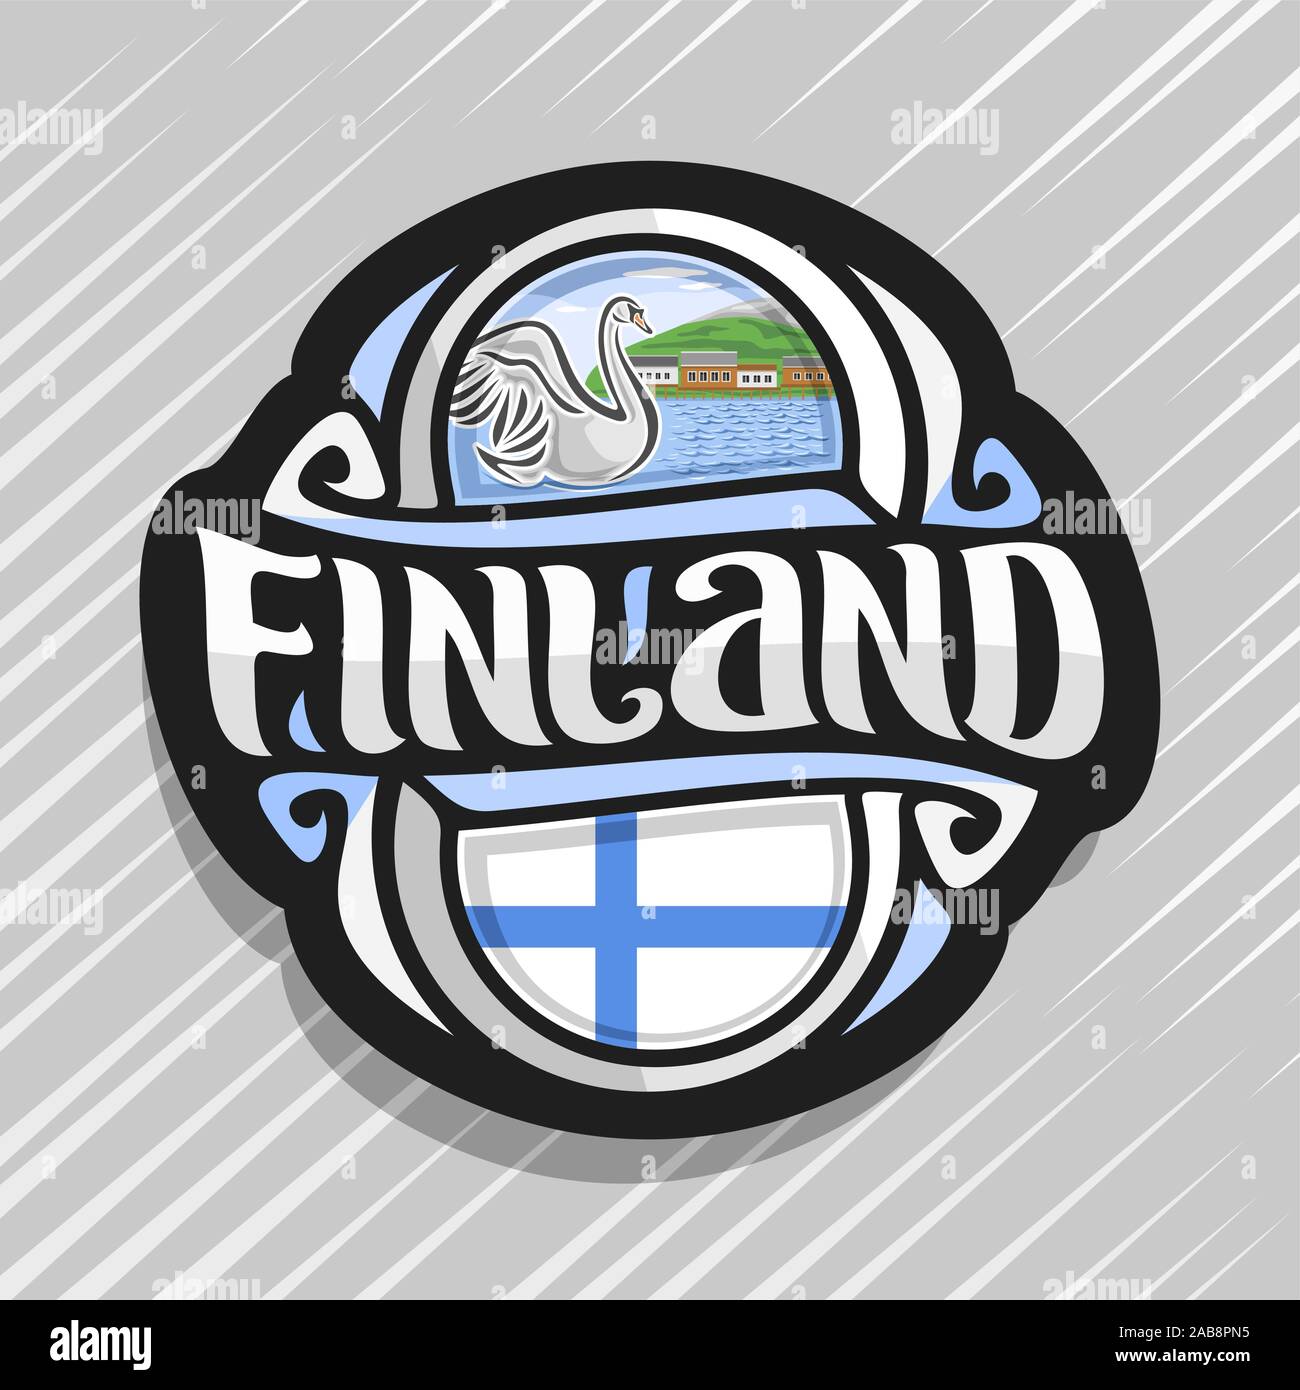 Il logo del vettore per la Finlandia paese, frigo magnete con bandiera finlandese, spazzola originale carattere tipografico per parola Finlandia e simbolo finlandese - White Swan nel lago di Illustrazione Vettoriale